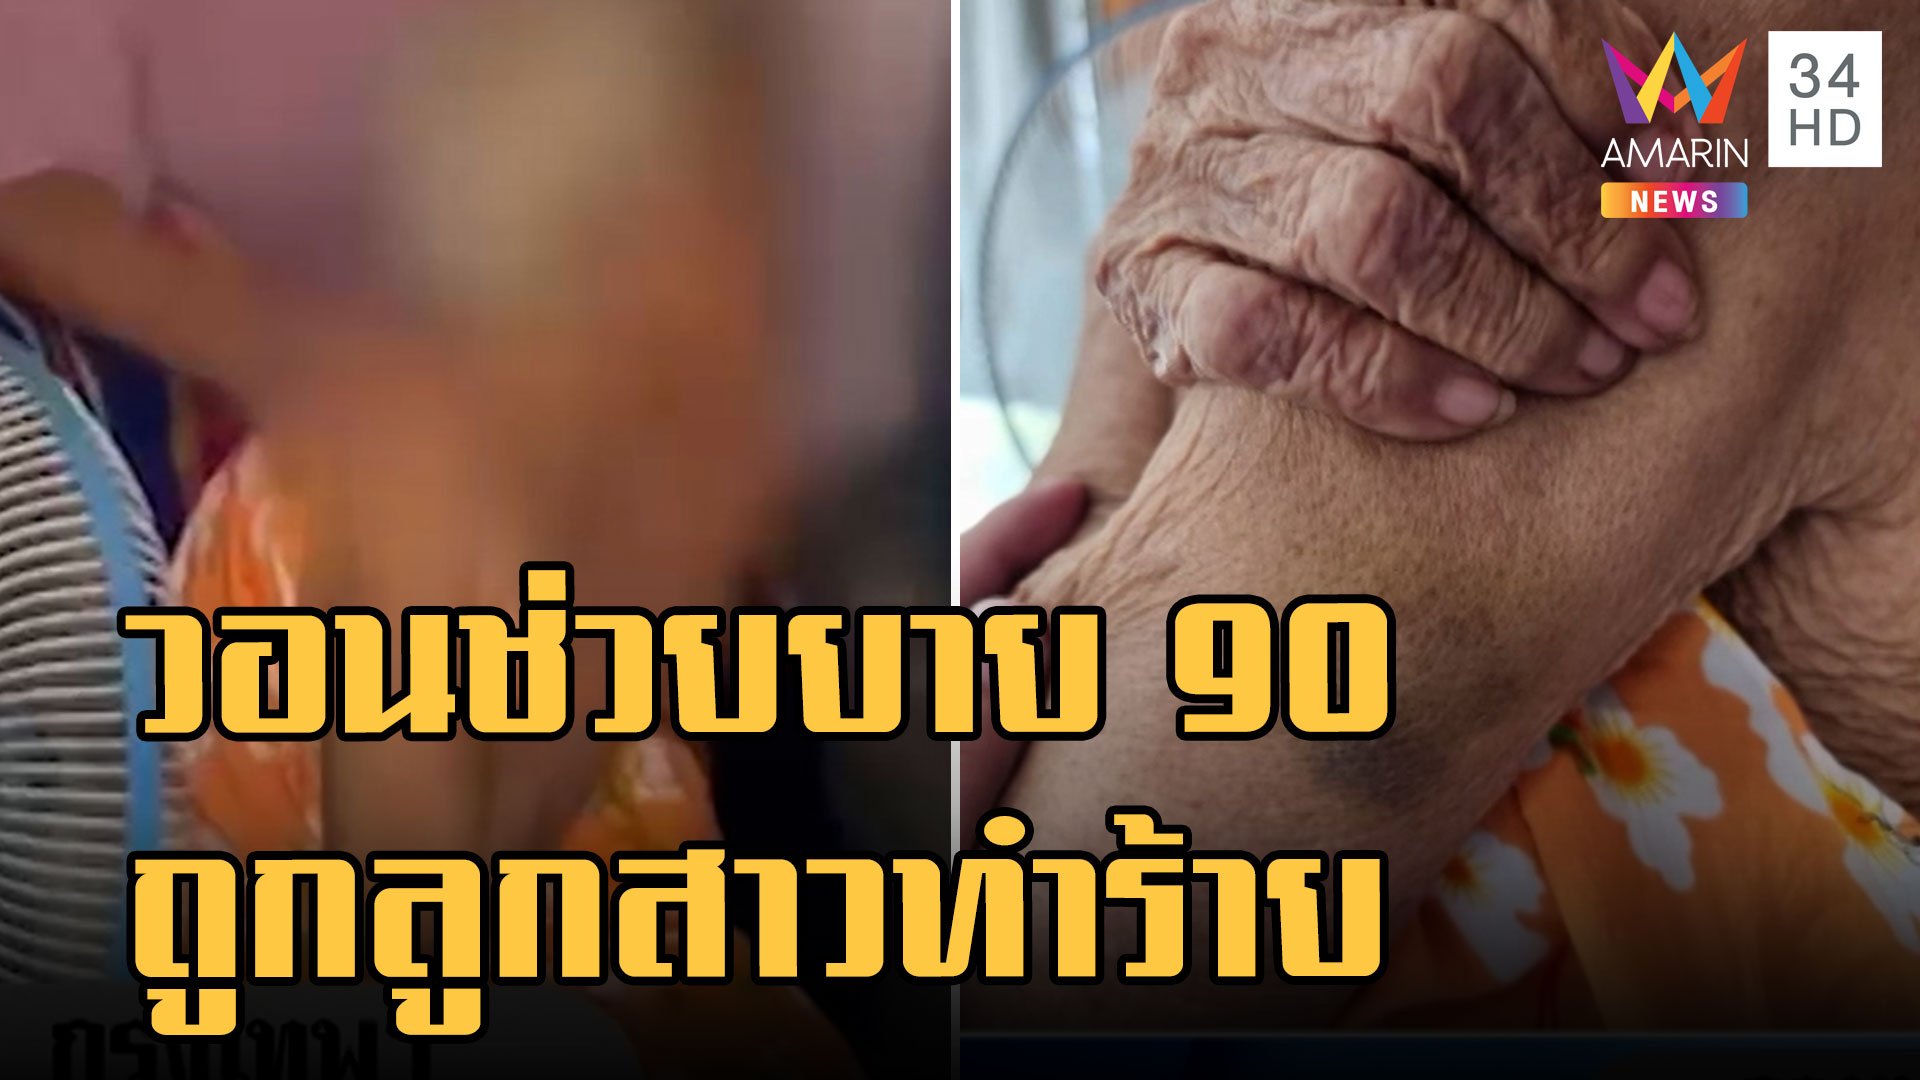 เพื่อนบ้านร้องให้ช่วยยายวัย 90 ถูกลูกสาวทำร้ายทุบตีแถมดุด่า | ข่าวเที่ยงอมรินทร์ | 24 ส.ค. 65 | AMARIN TVHD34